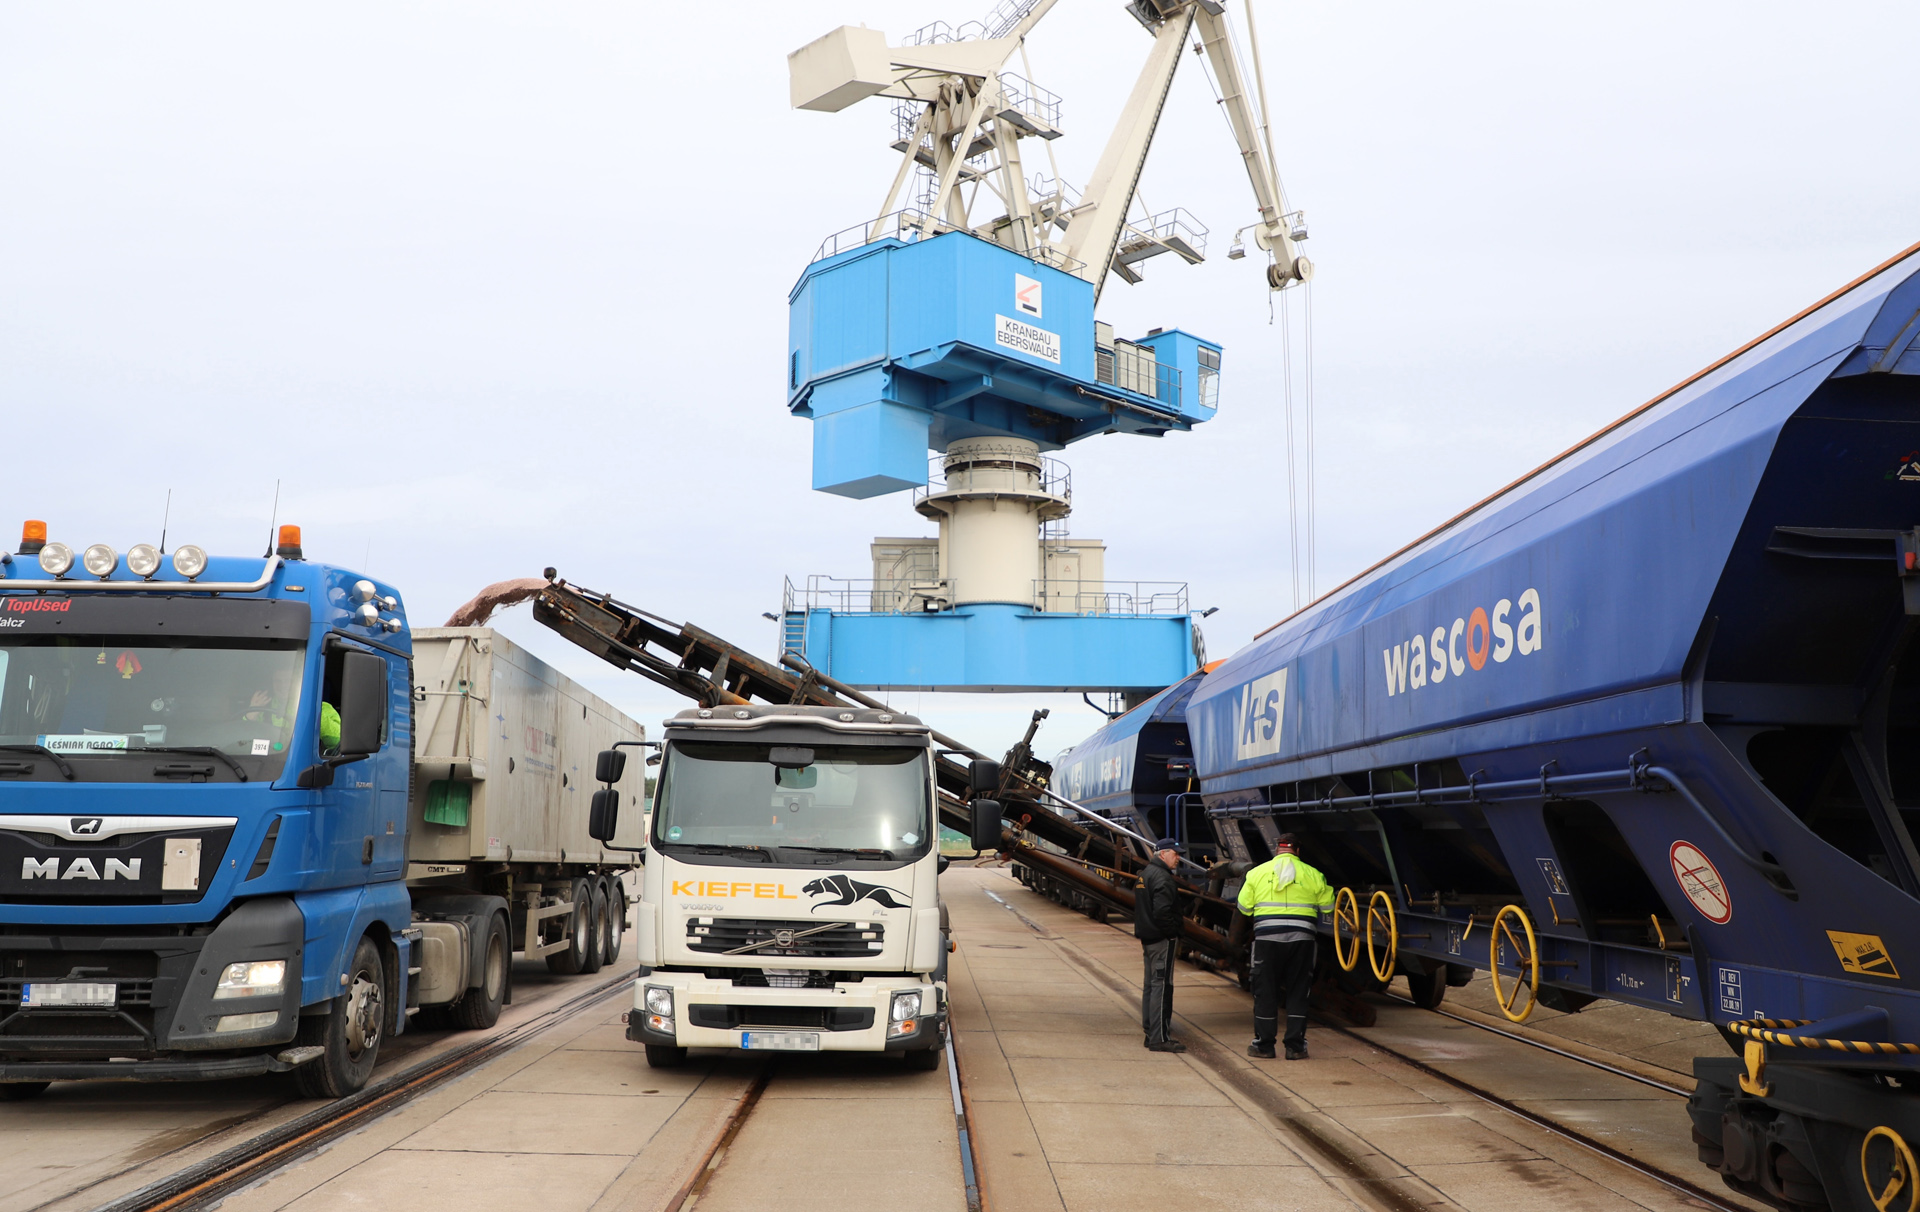 Foto: Verladung im Hafen mit Kran, LKW und Zug